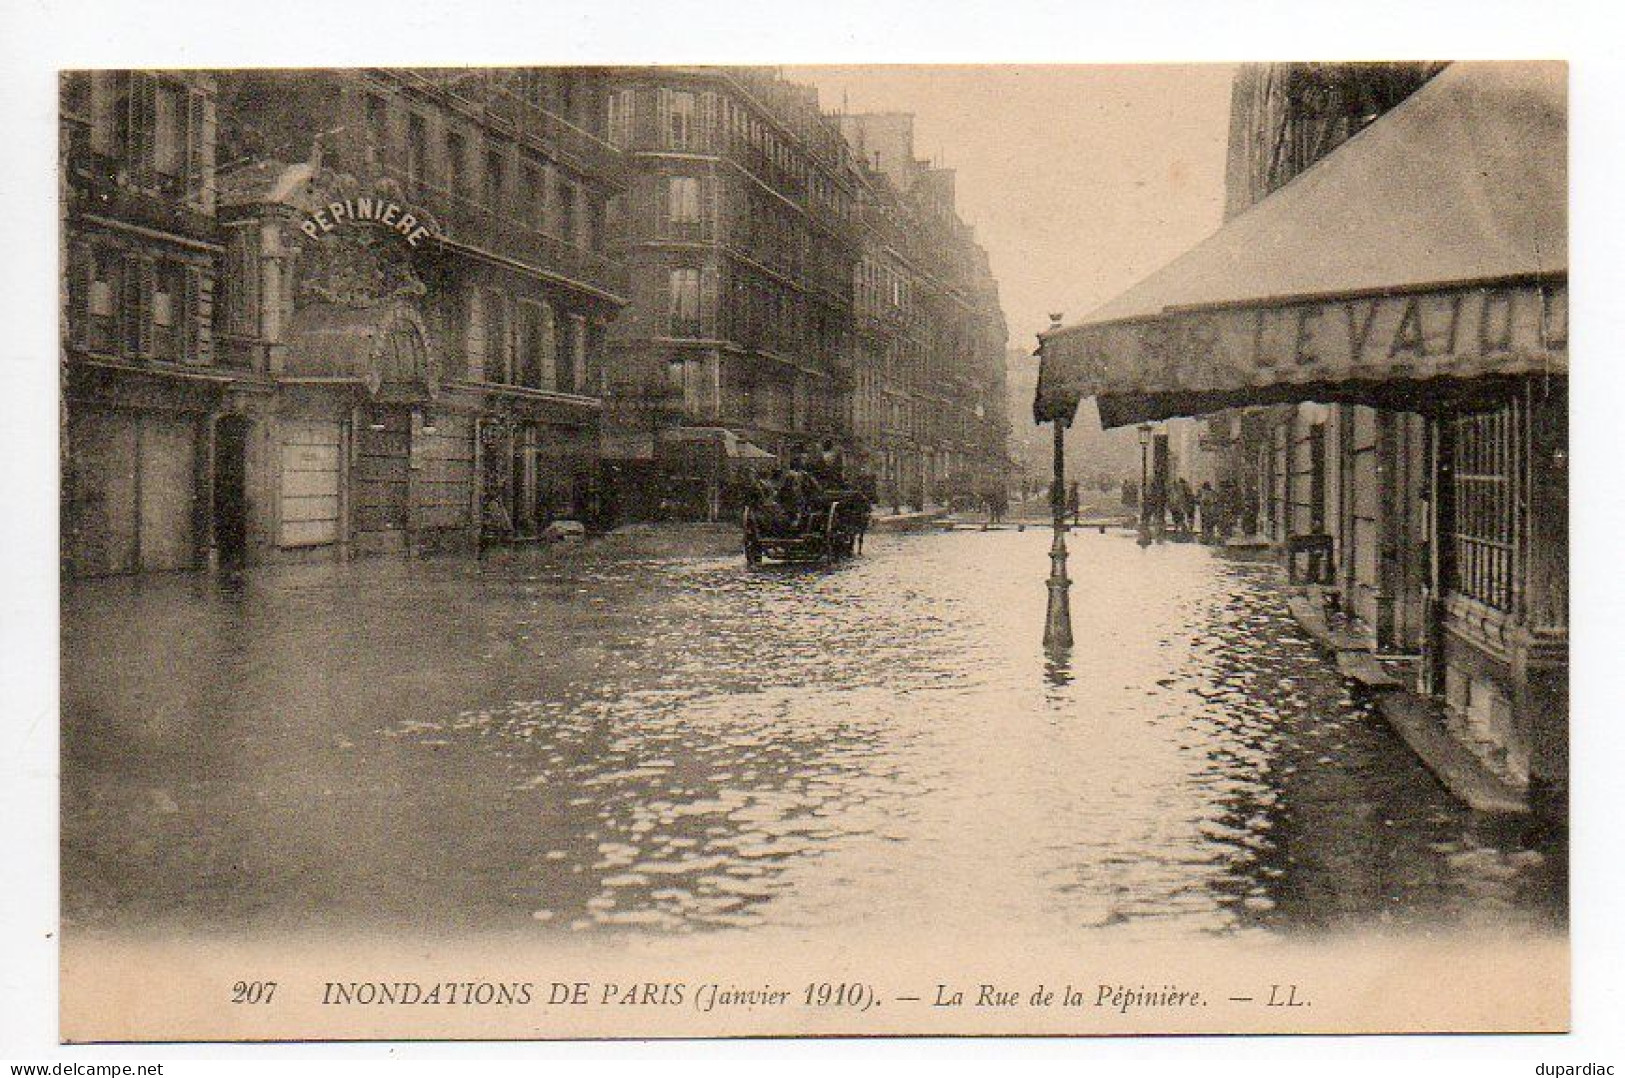 INONDATIONS : lot de 78 cartes, inondations à Villematier, Orléans, Nantes, Lyon, Moissac, Colombes, Paris, Issy, ...